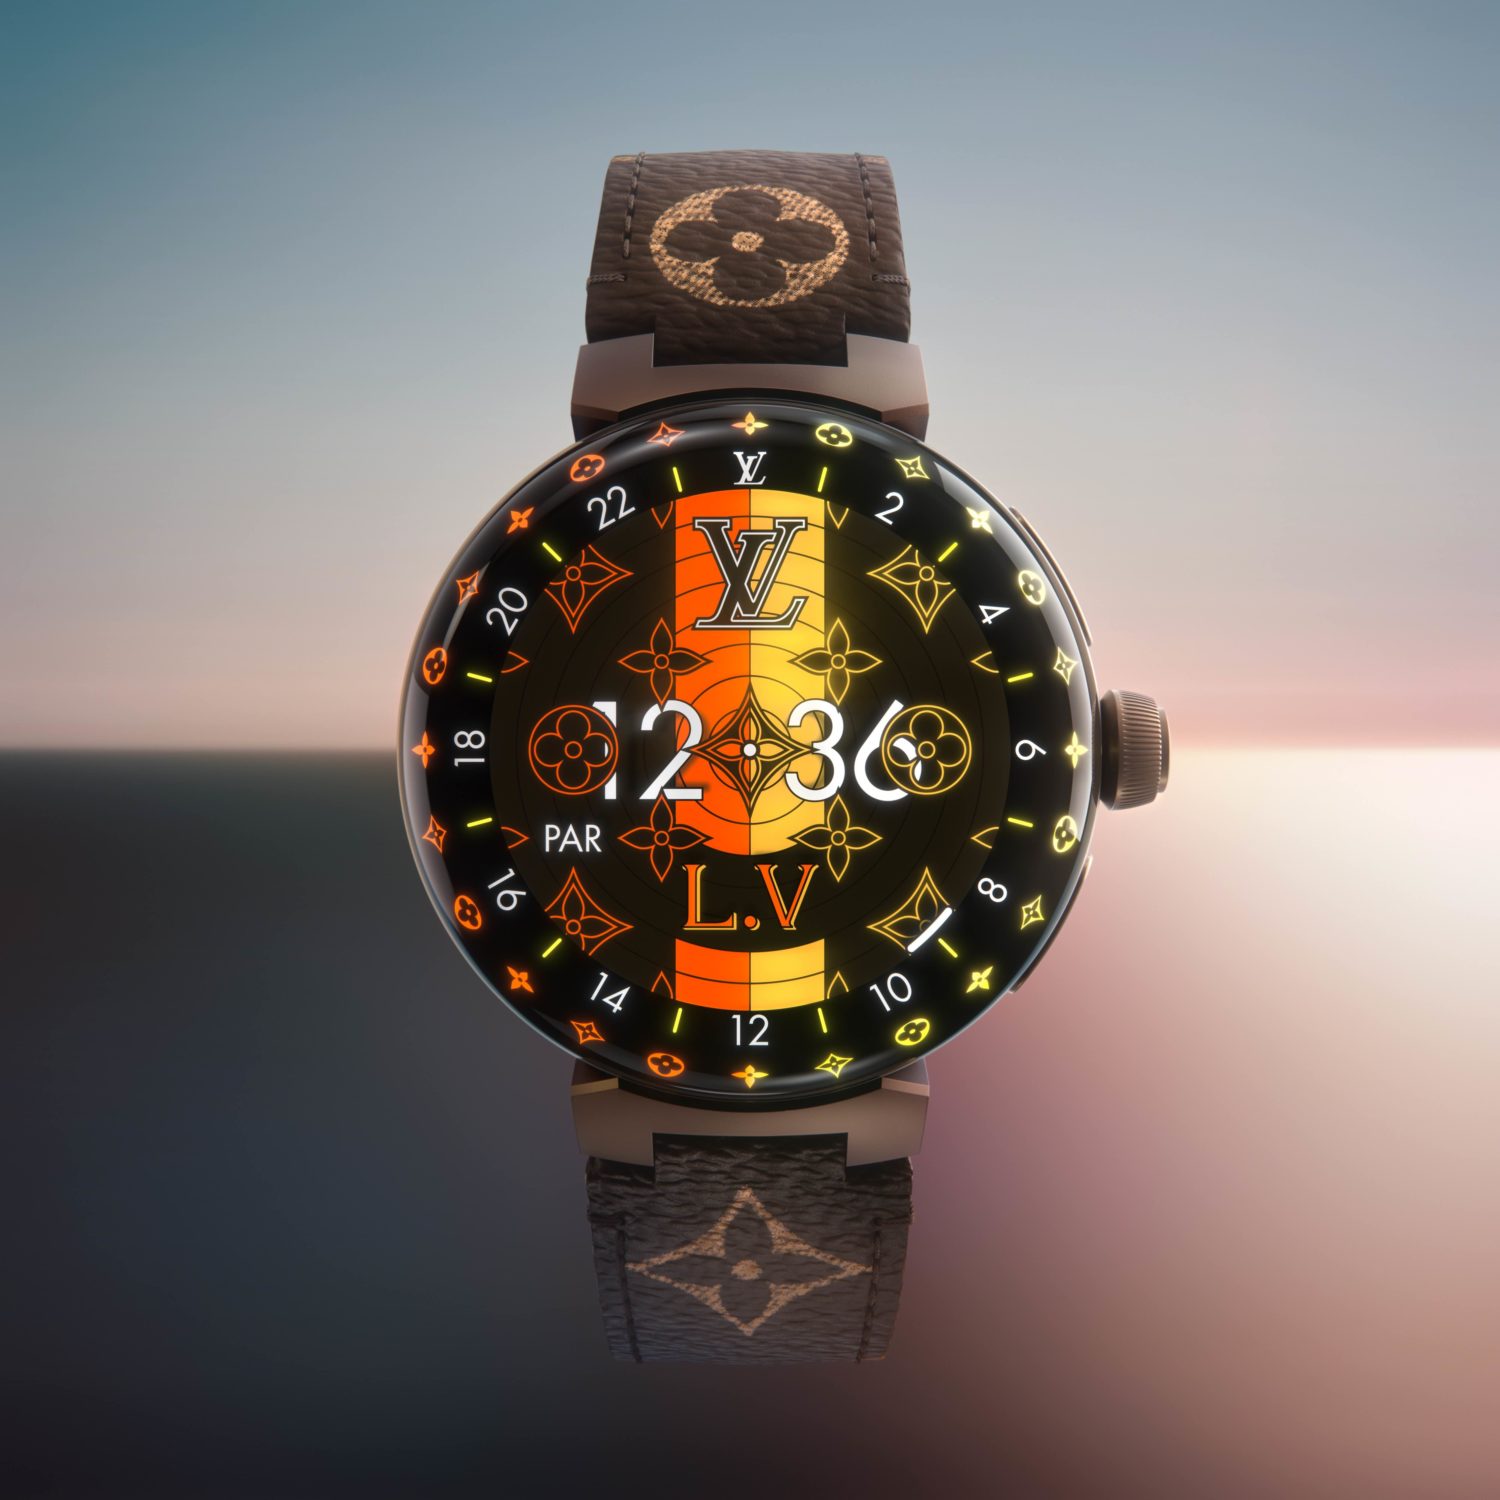 Introducing Louis Vuitton Tambour Horizon Light Up Smartwatch